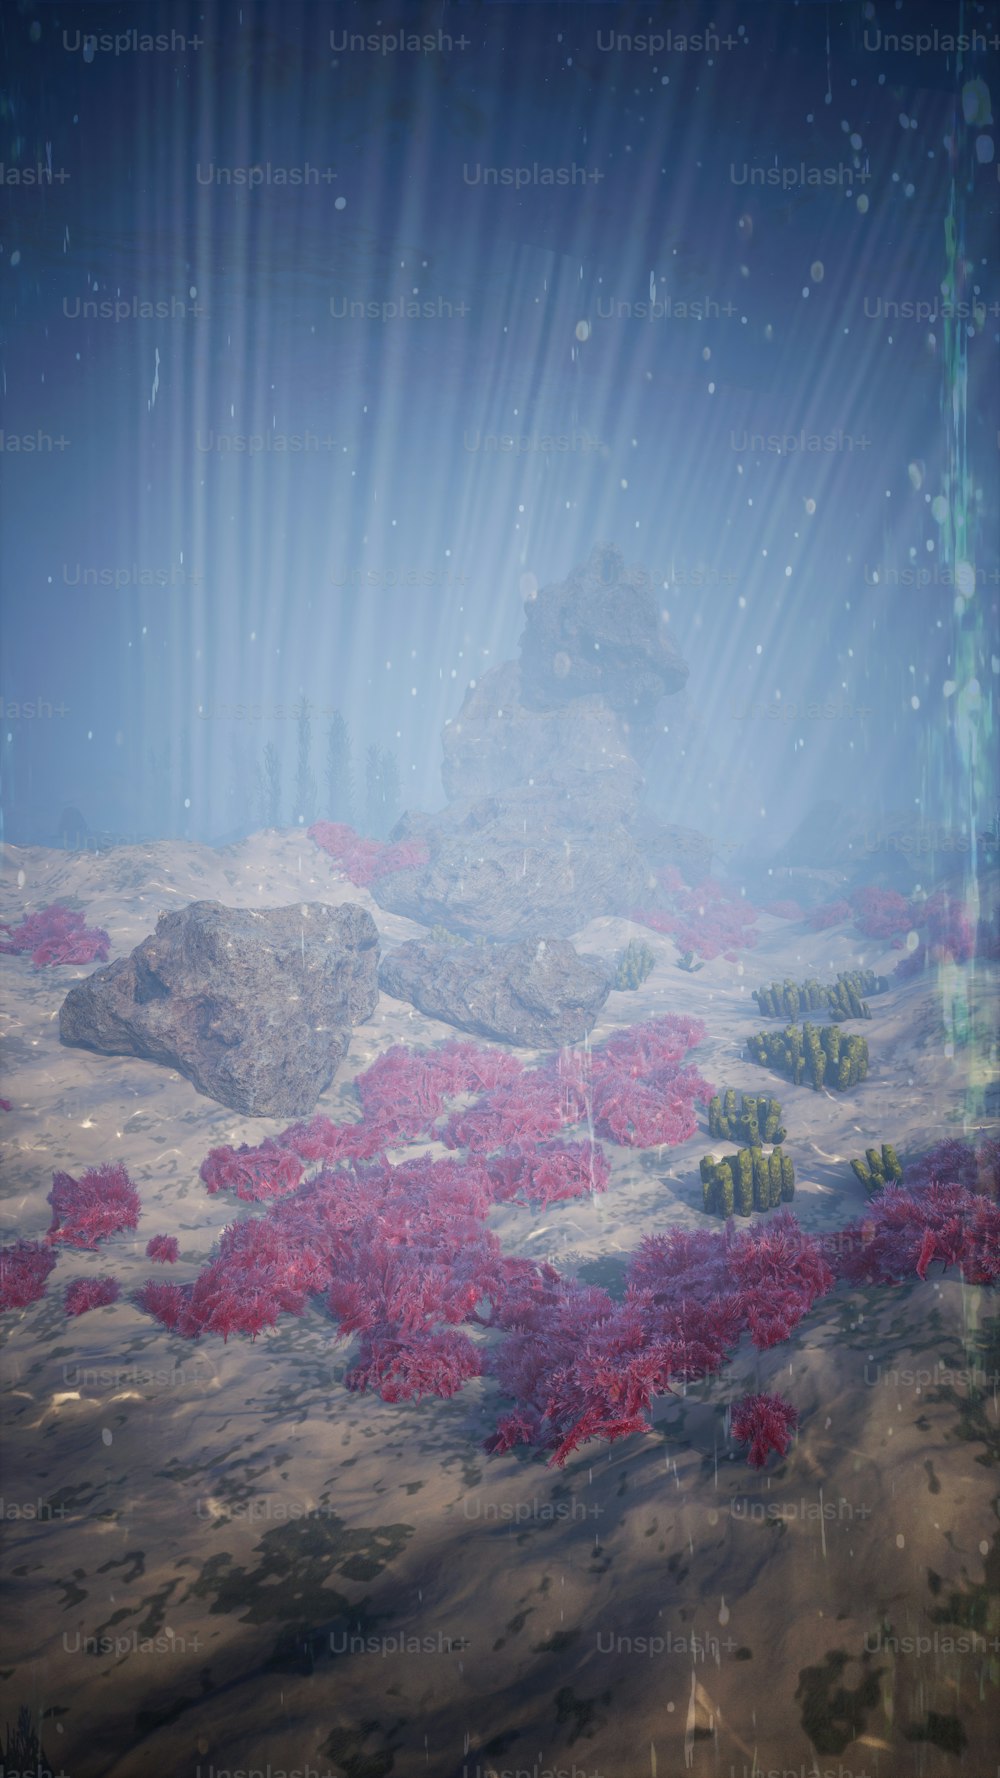 Una scena sottomarina con piante rosse e rocce